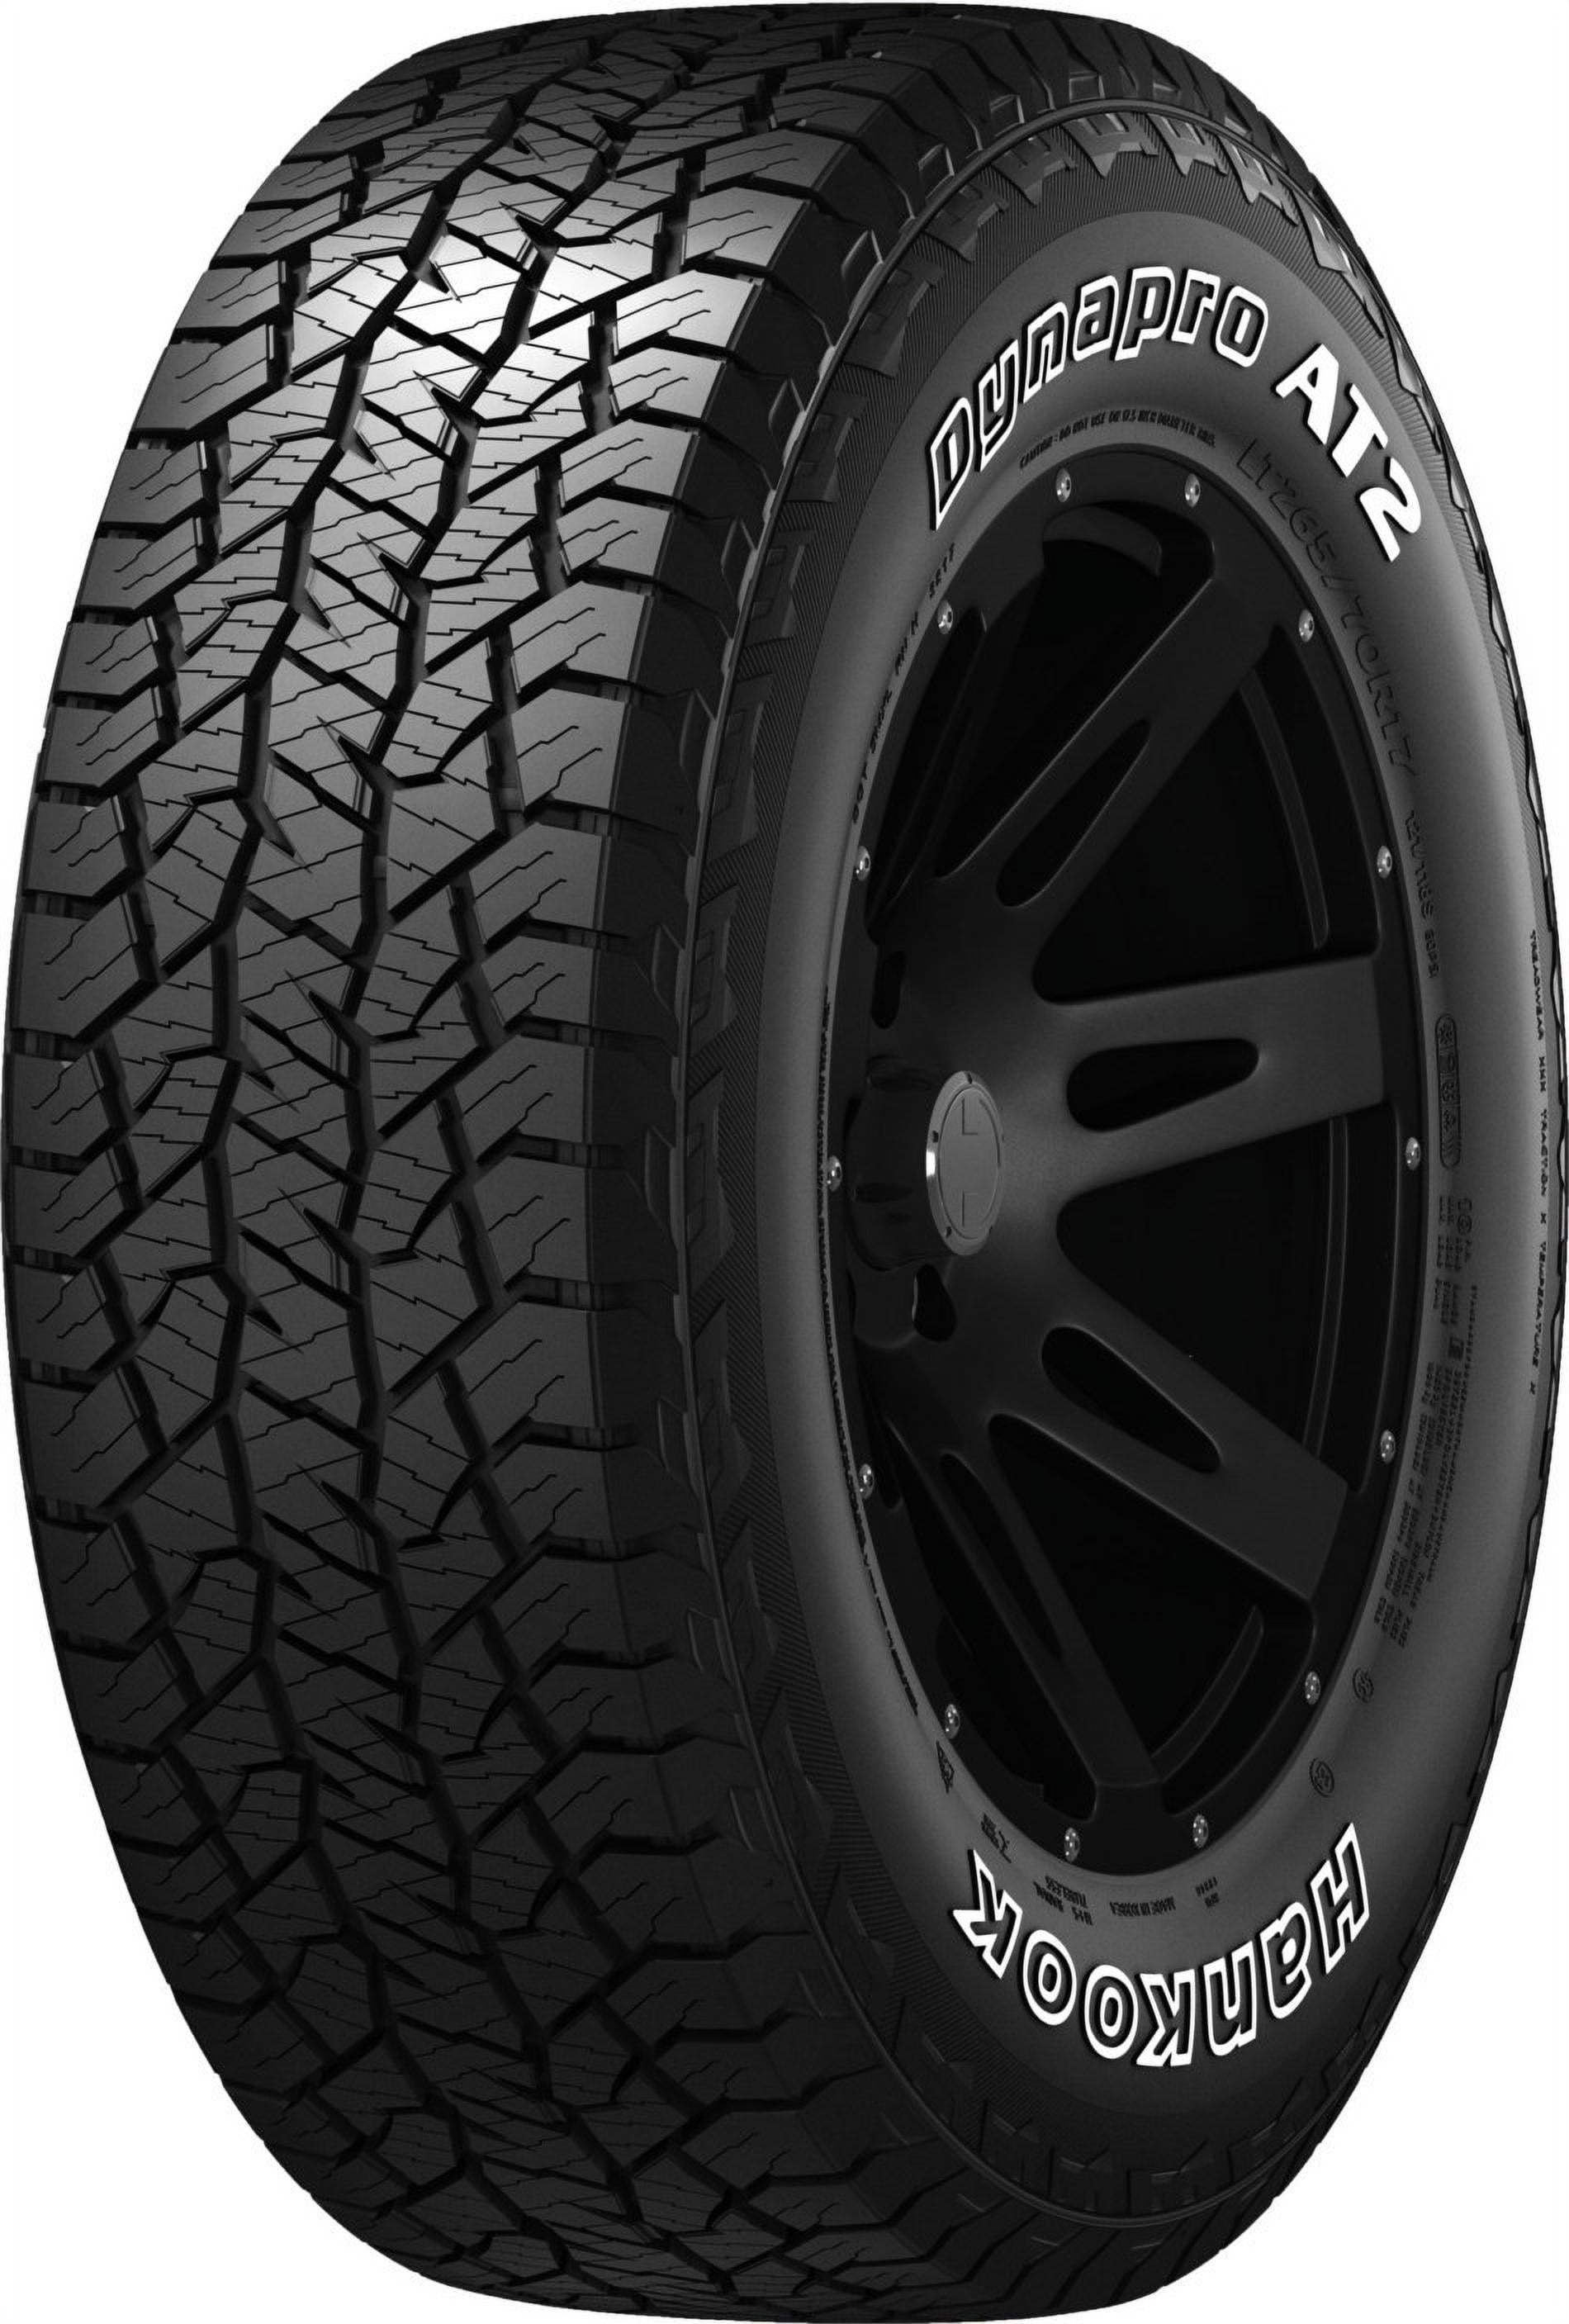 Xxx Big Tires Video - Hankook Dynapro AT2 (RF11) All Terrain 265/70R17 115T Light Truck Tire -  Walmart.com